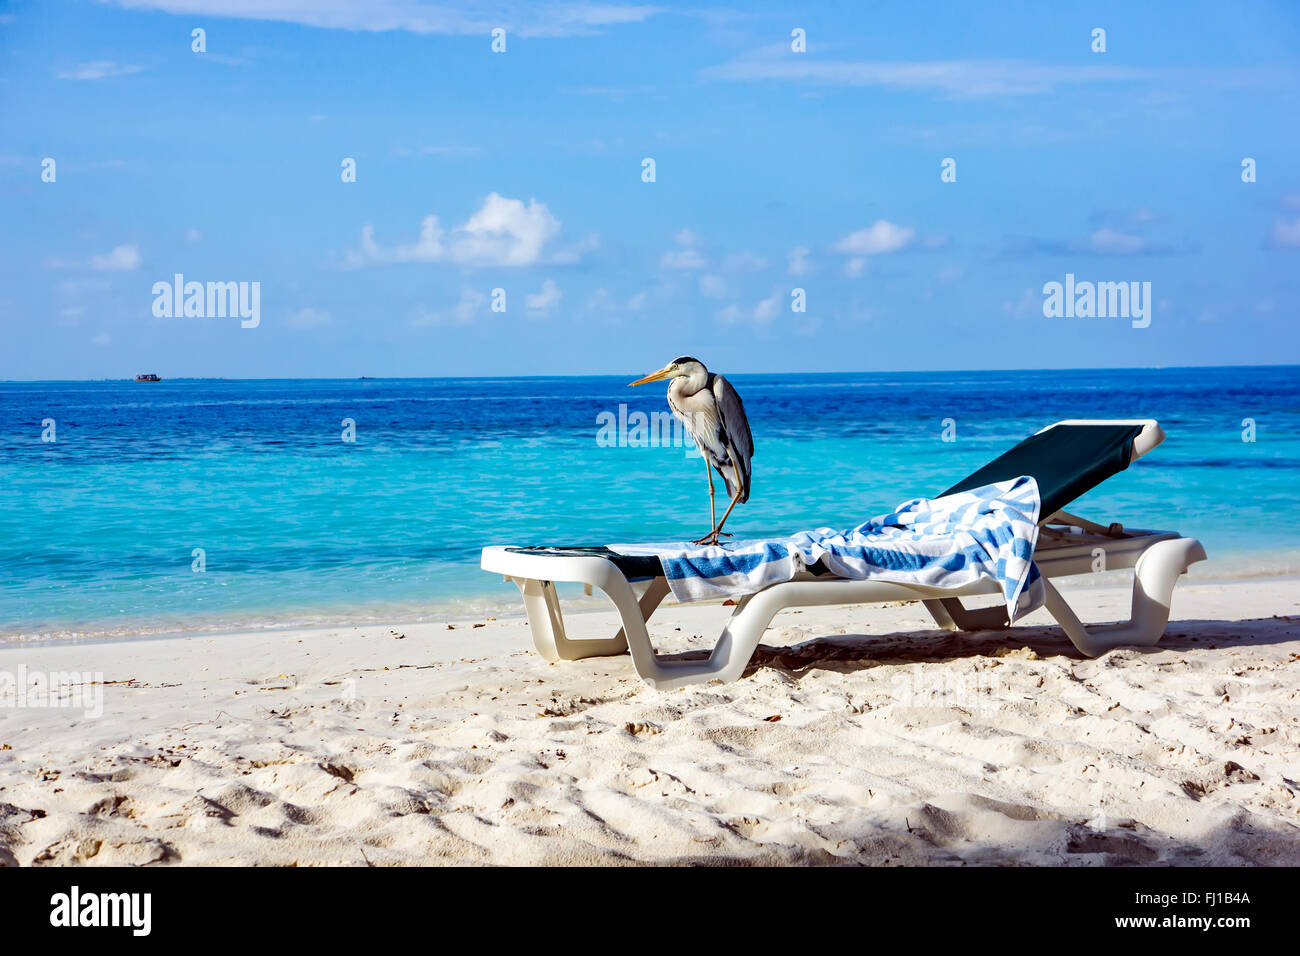 Chiron gris sur un transat sur la plage. Maldives Océan Indien. Banque D'Images